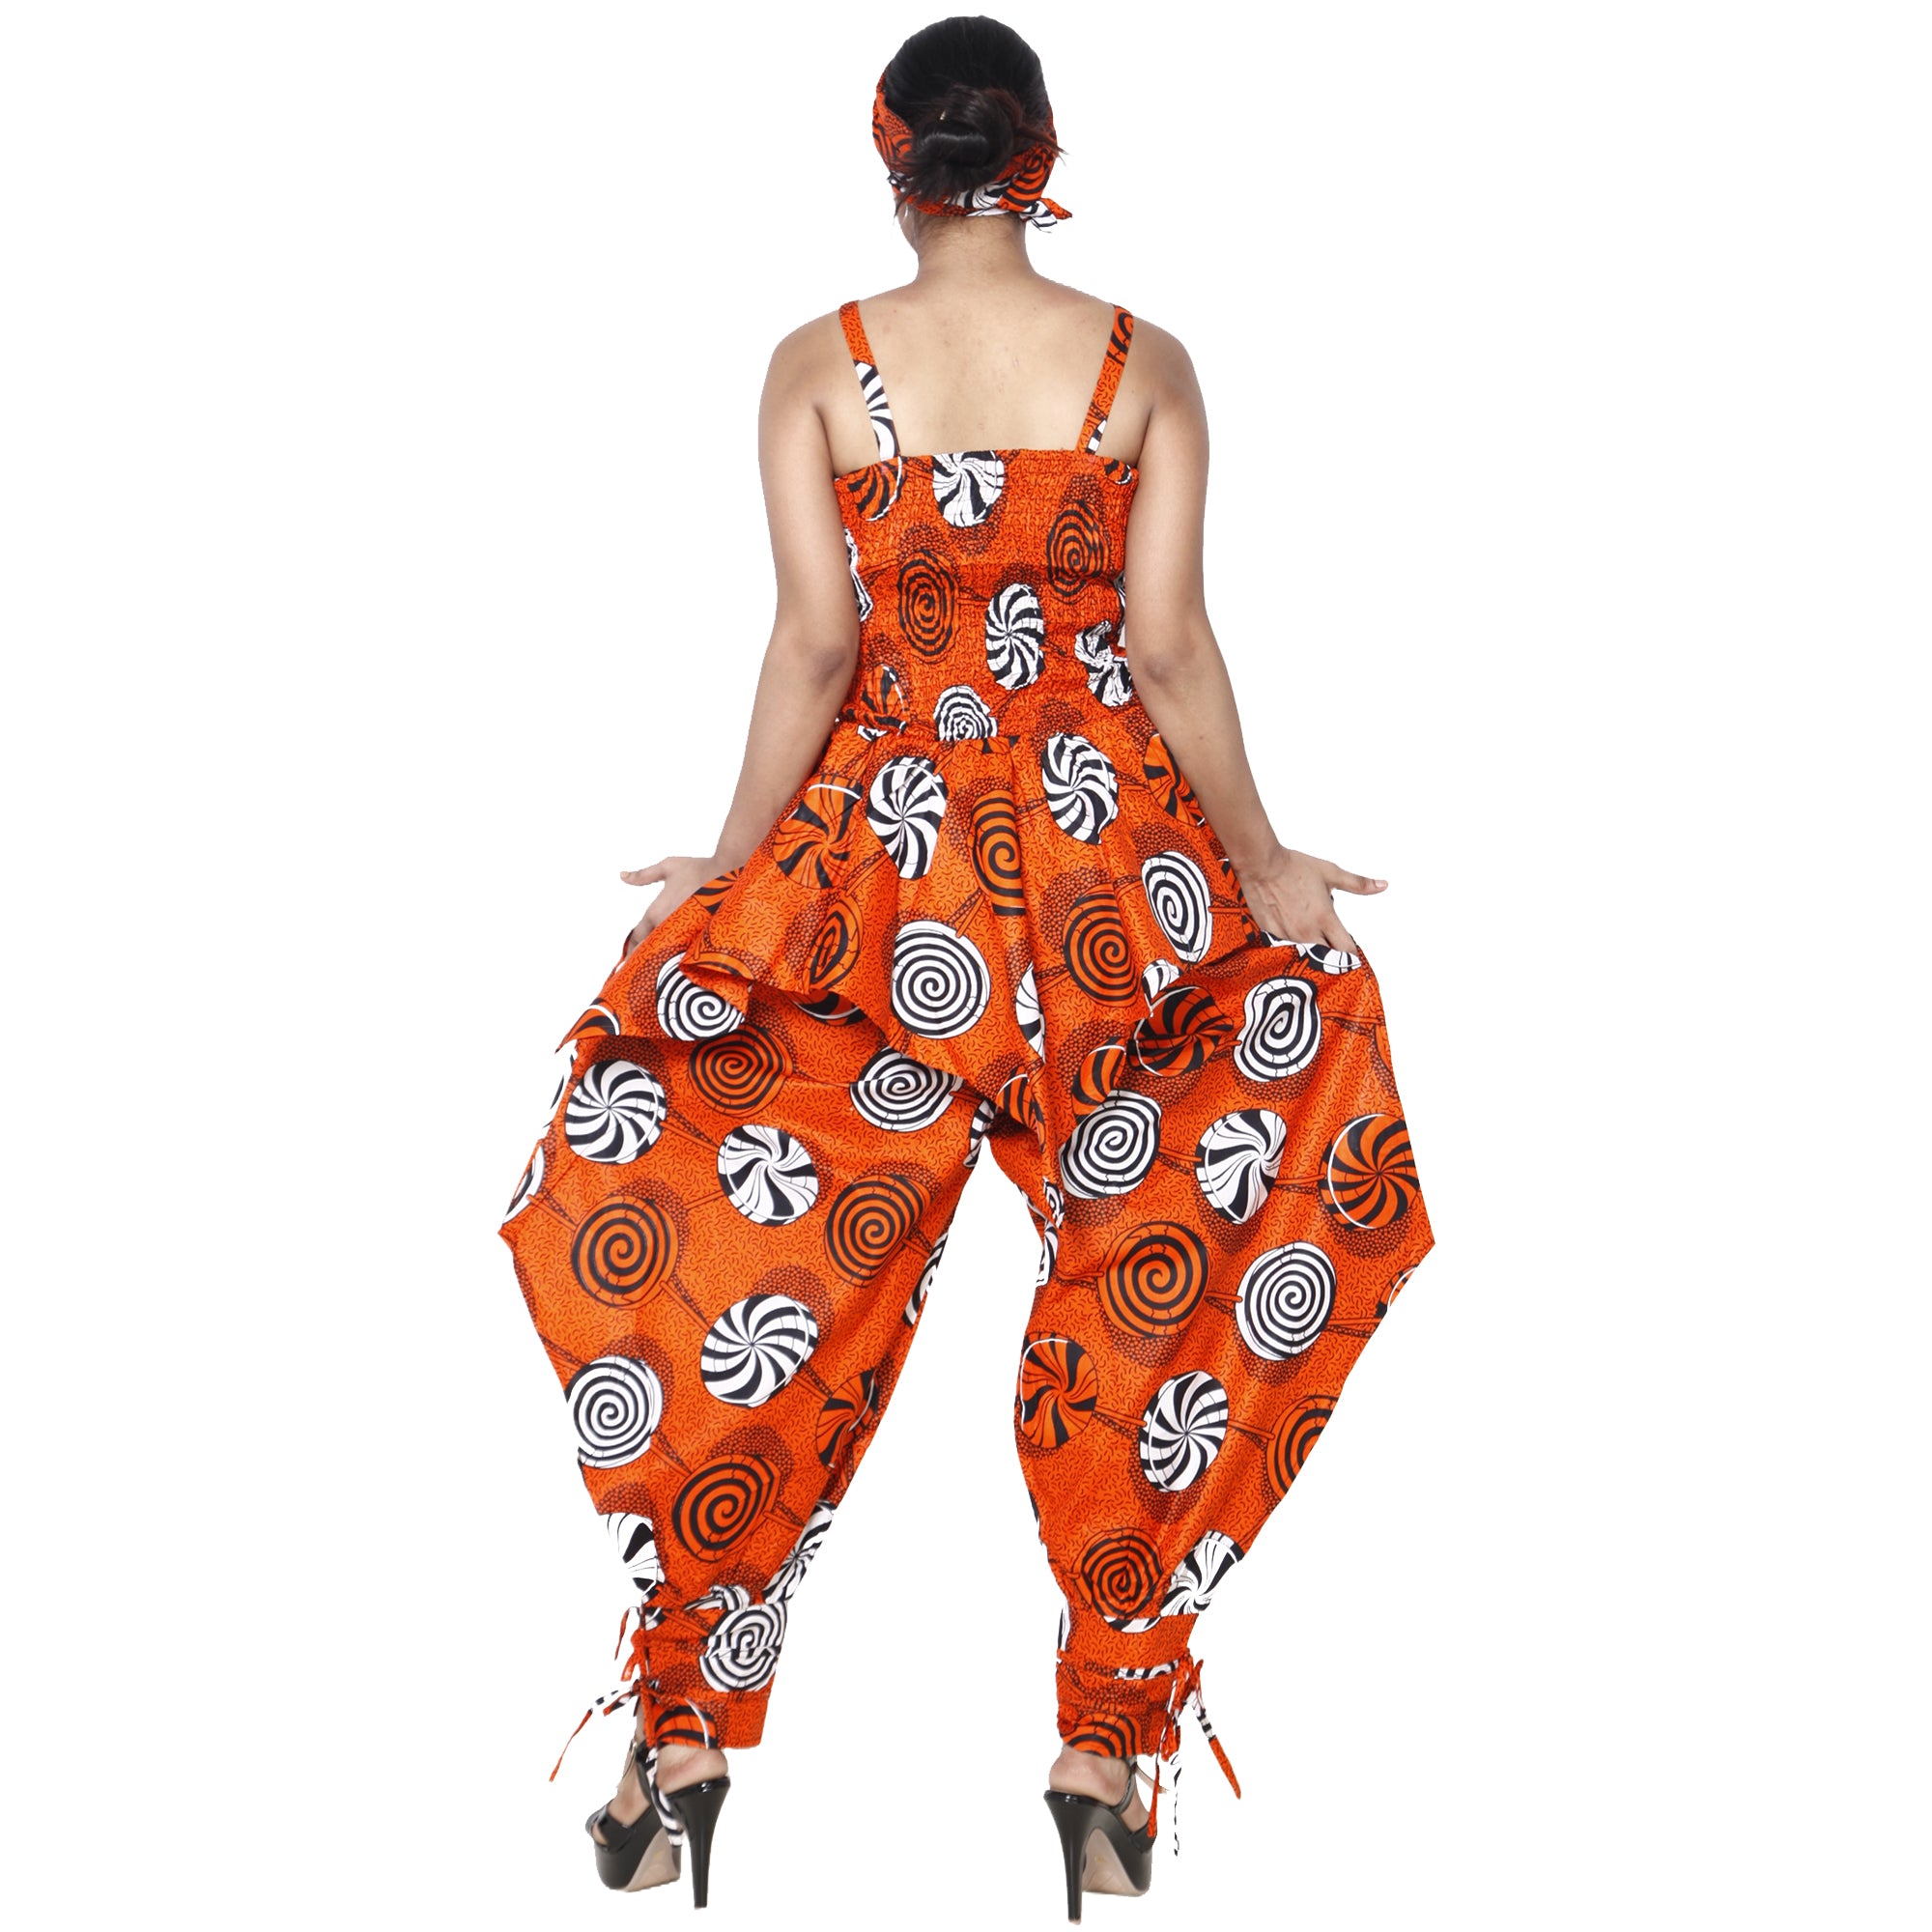 Women's African Print Sleeveless Peplum Top & Jogger Pants